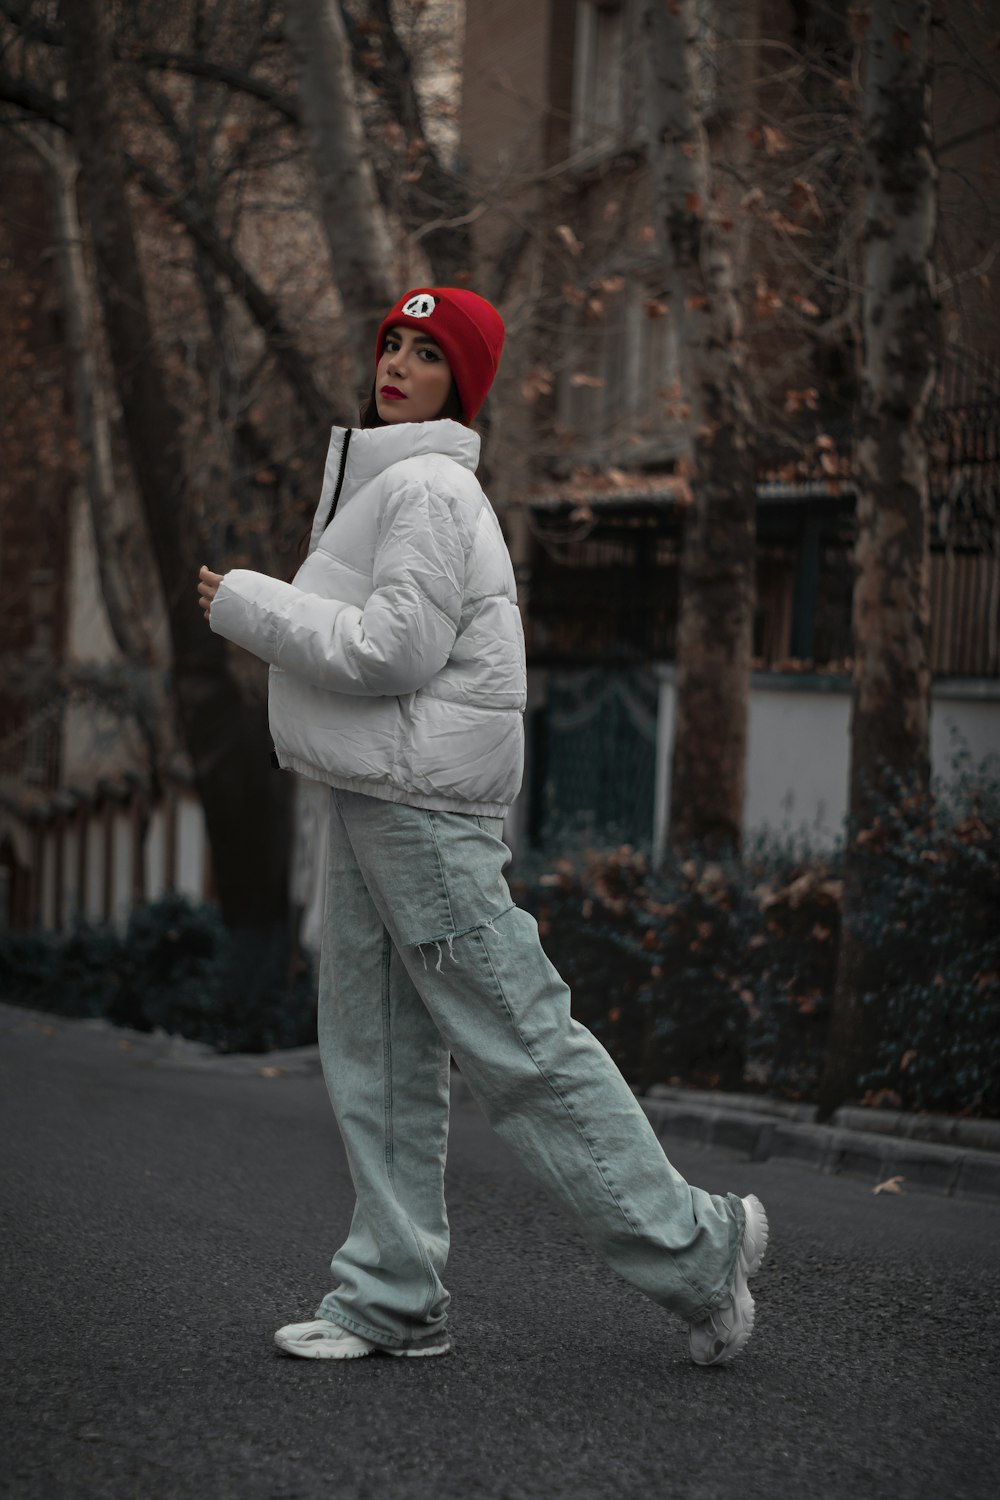 une personne marchant dans une rue avec un chapeau rouge